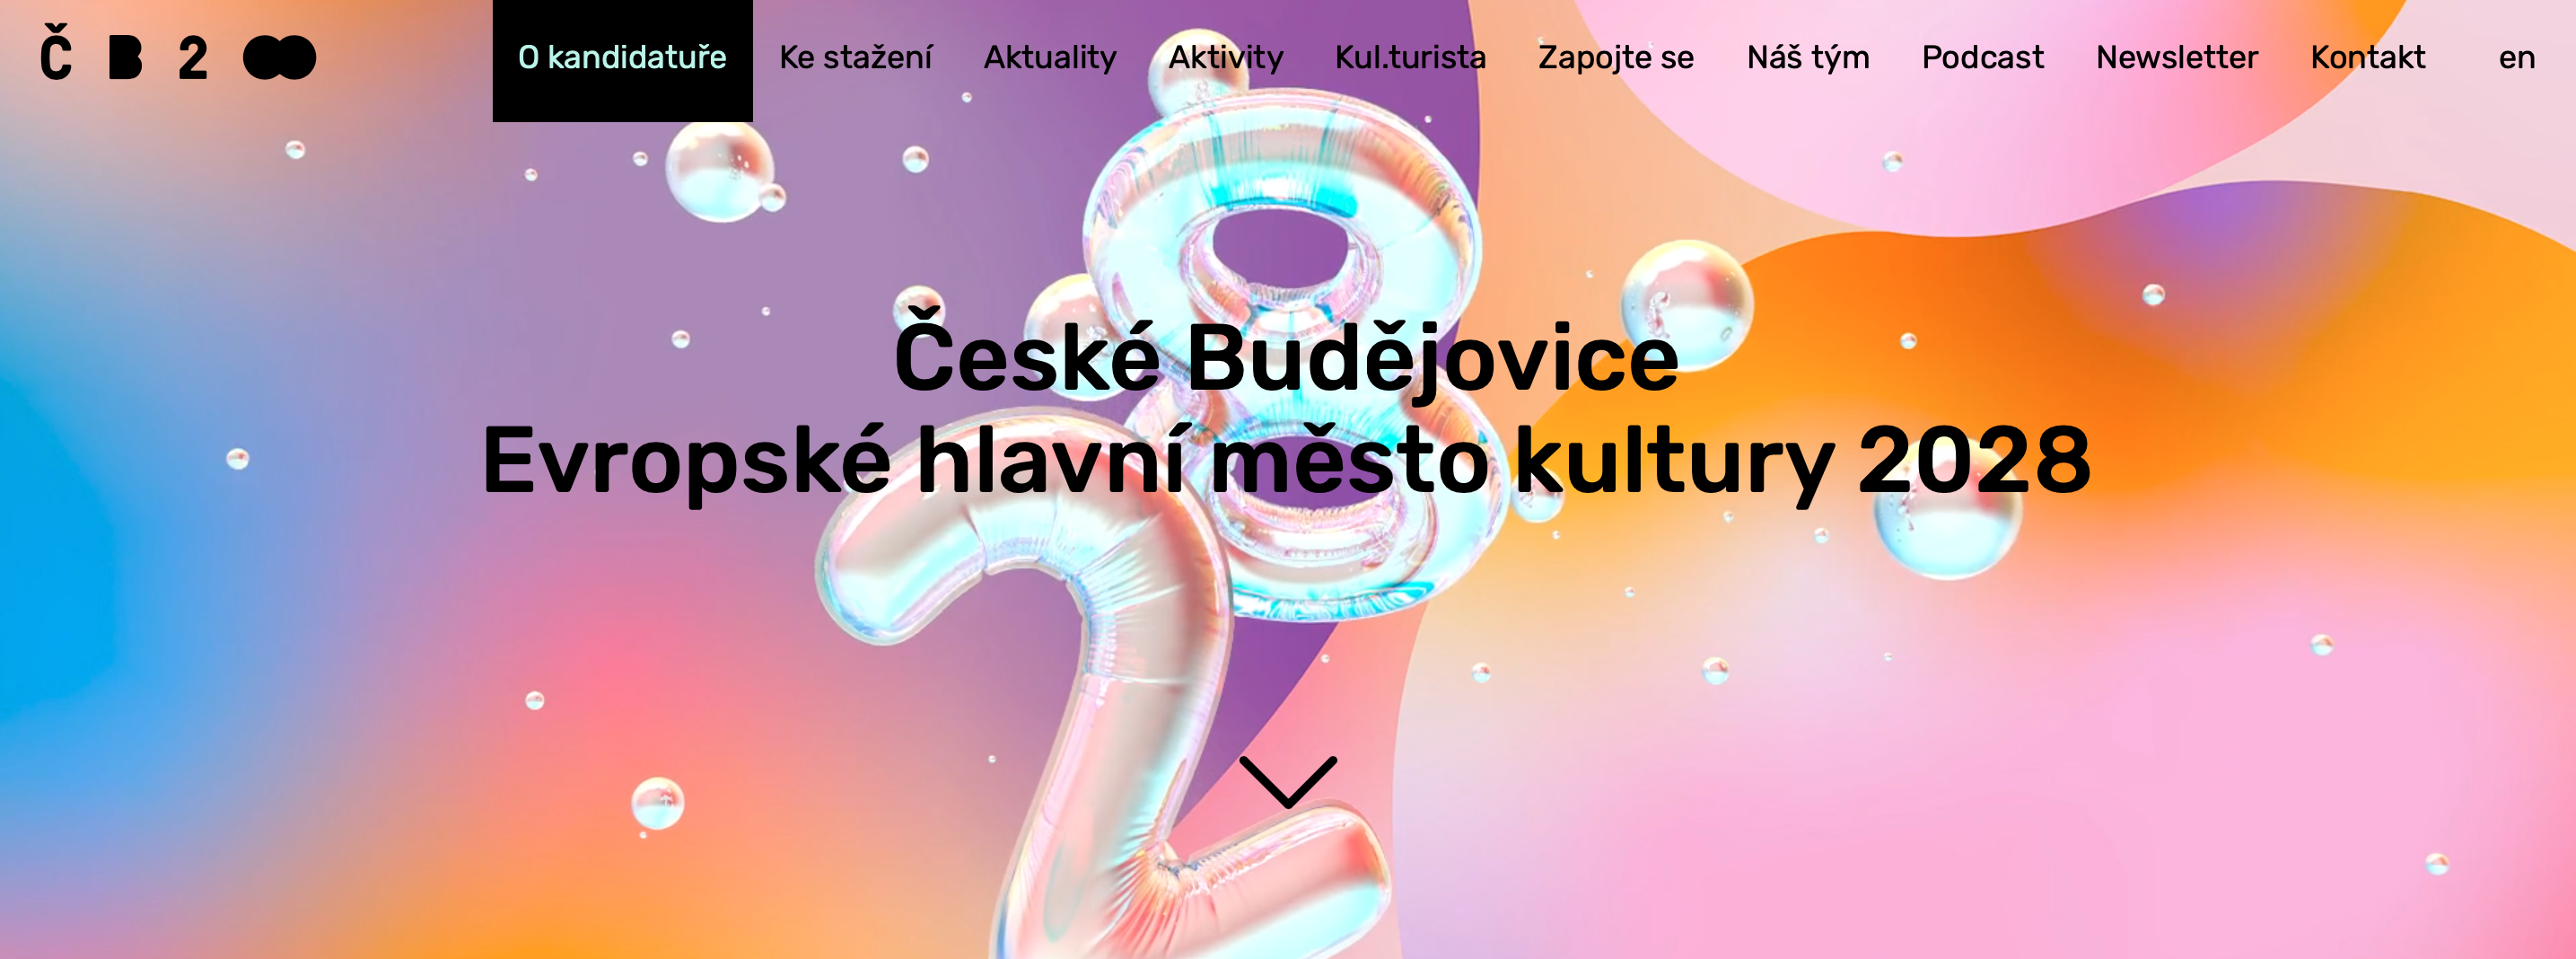 České Budějovice jsou Evropským hlavním městem kultury 2028